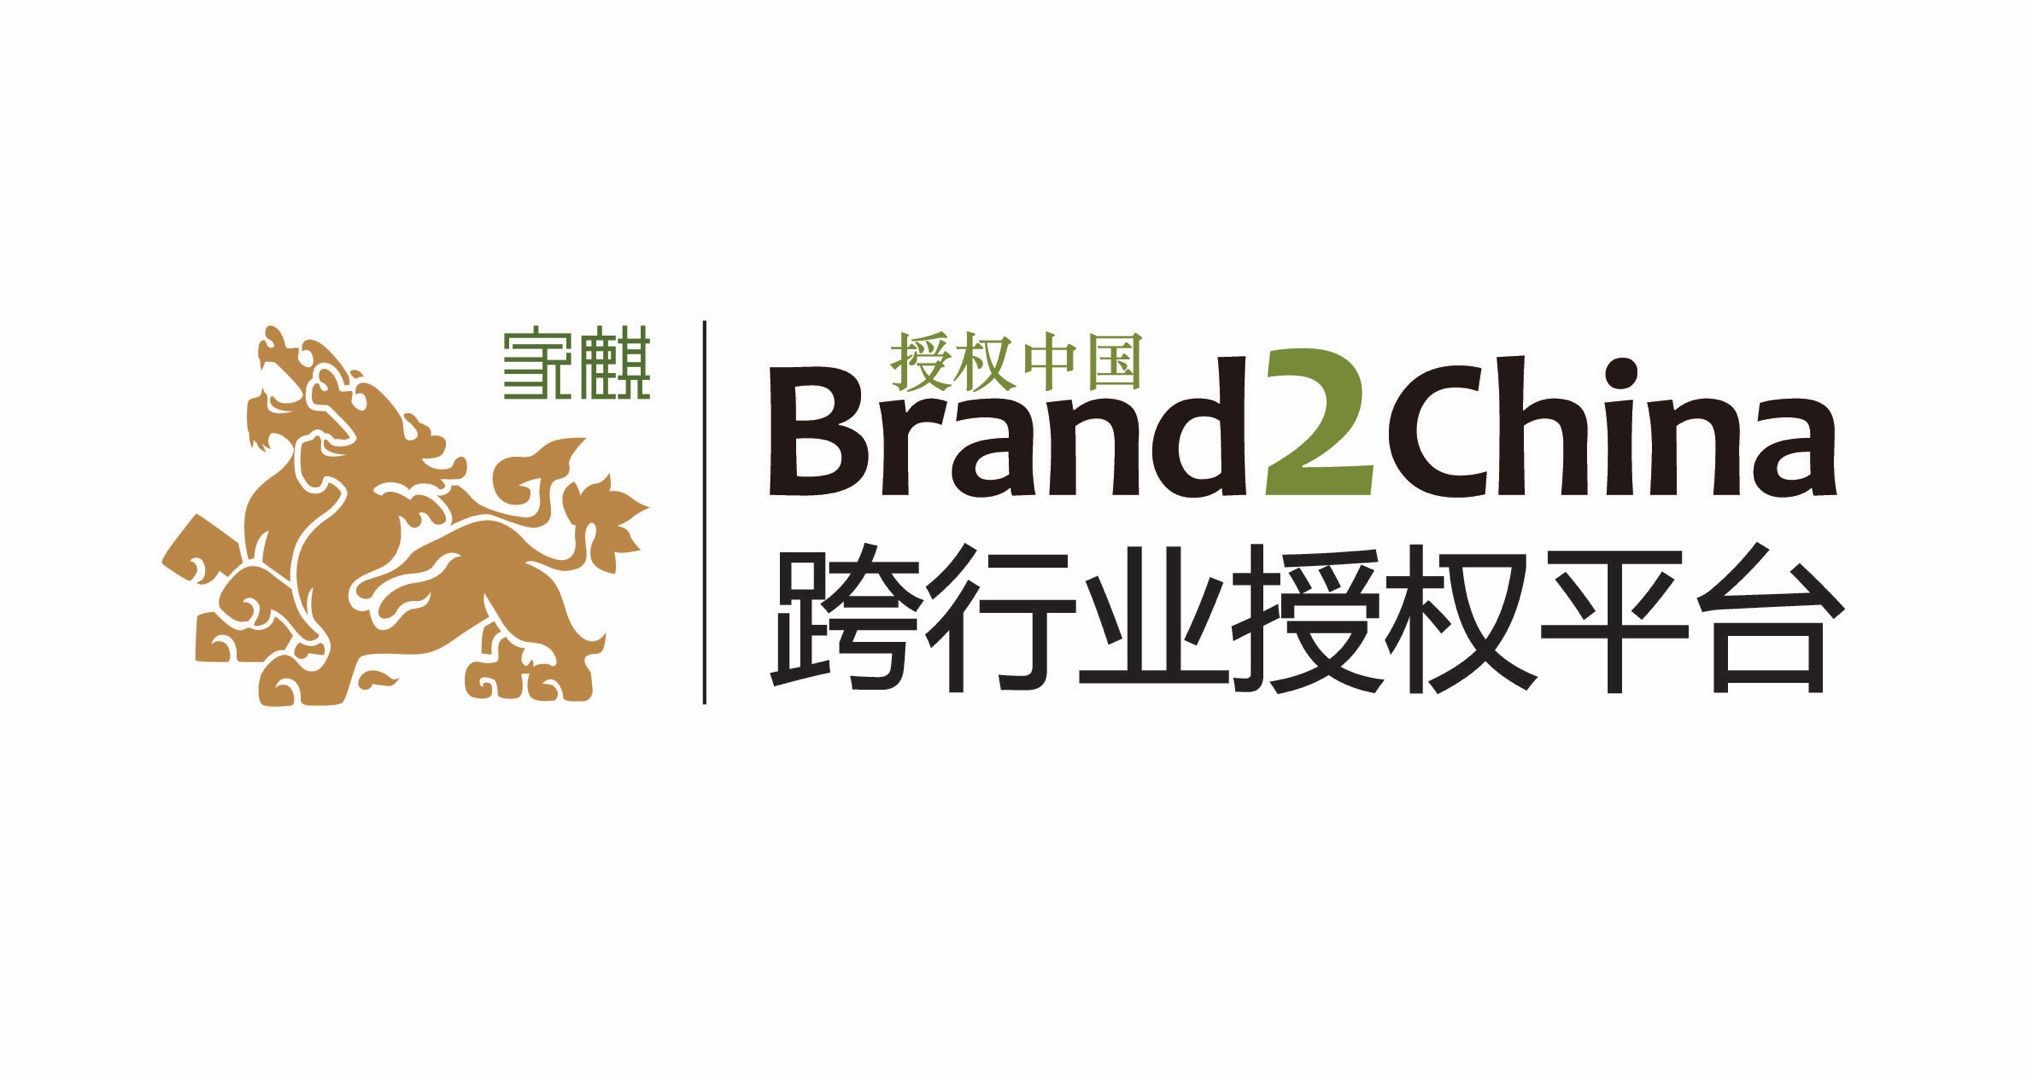 Brand2China